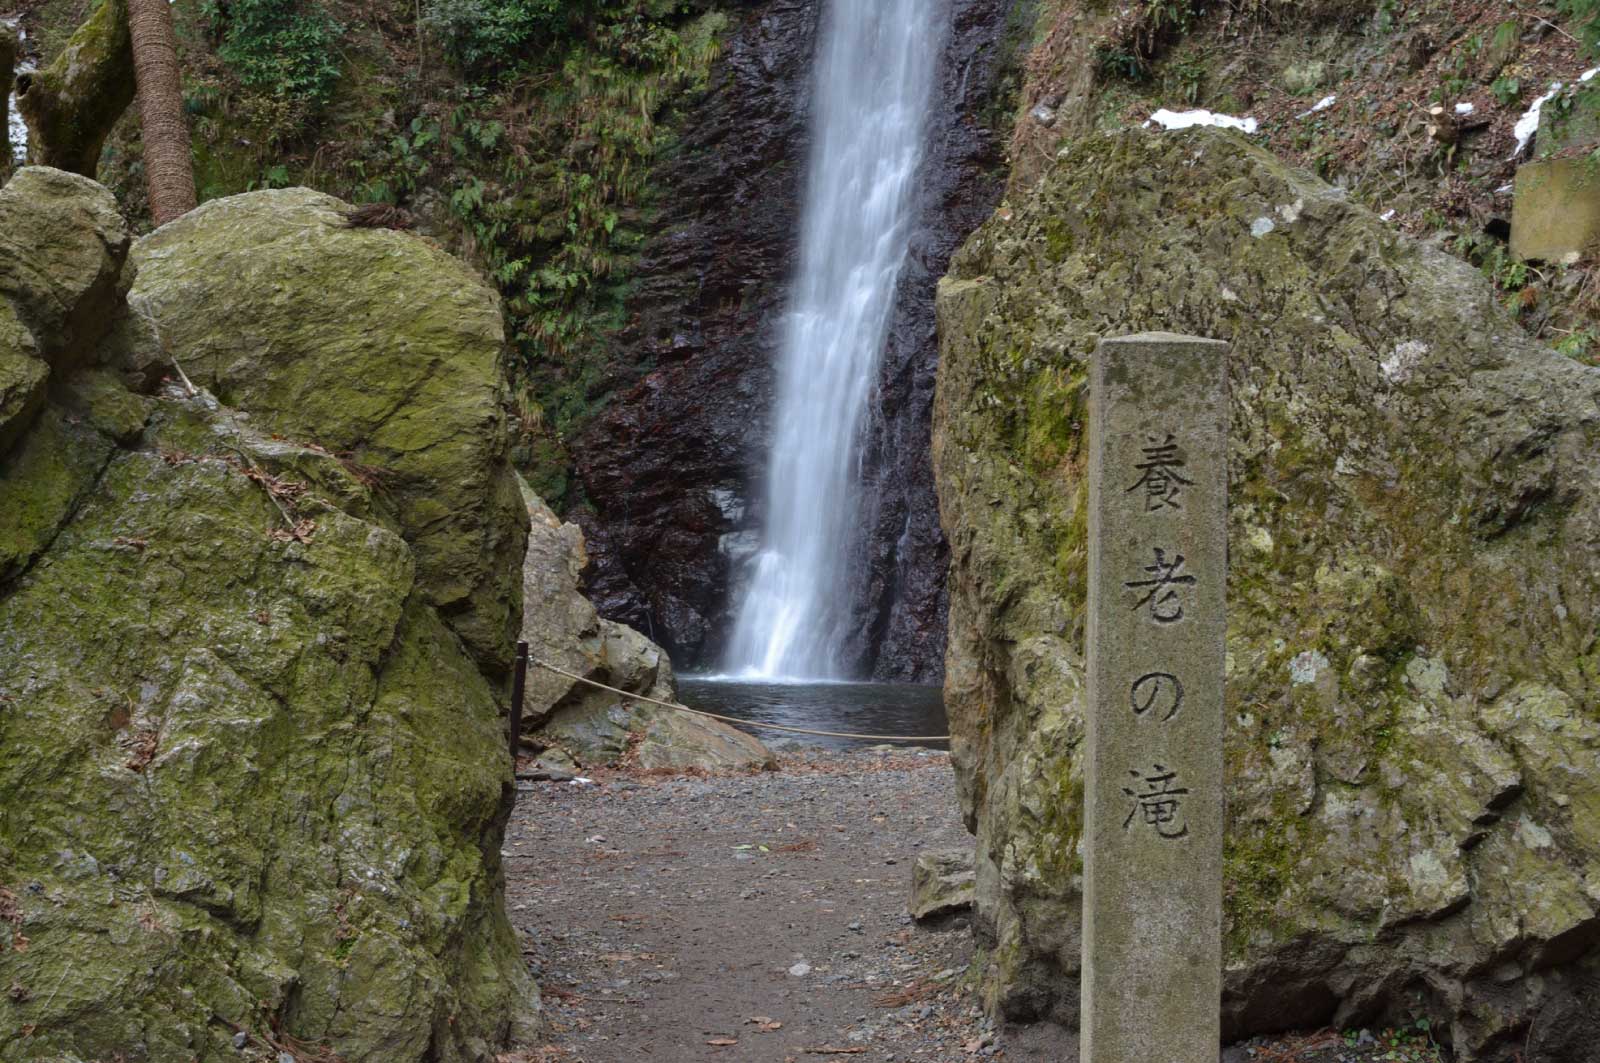 日本の滝百選及び養老の滝・菊水泉として名水百選にも選定